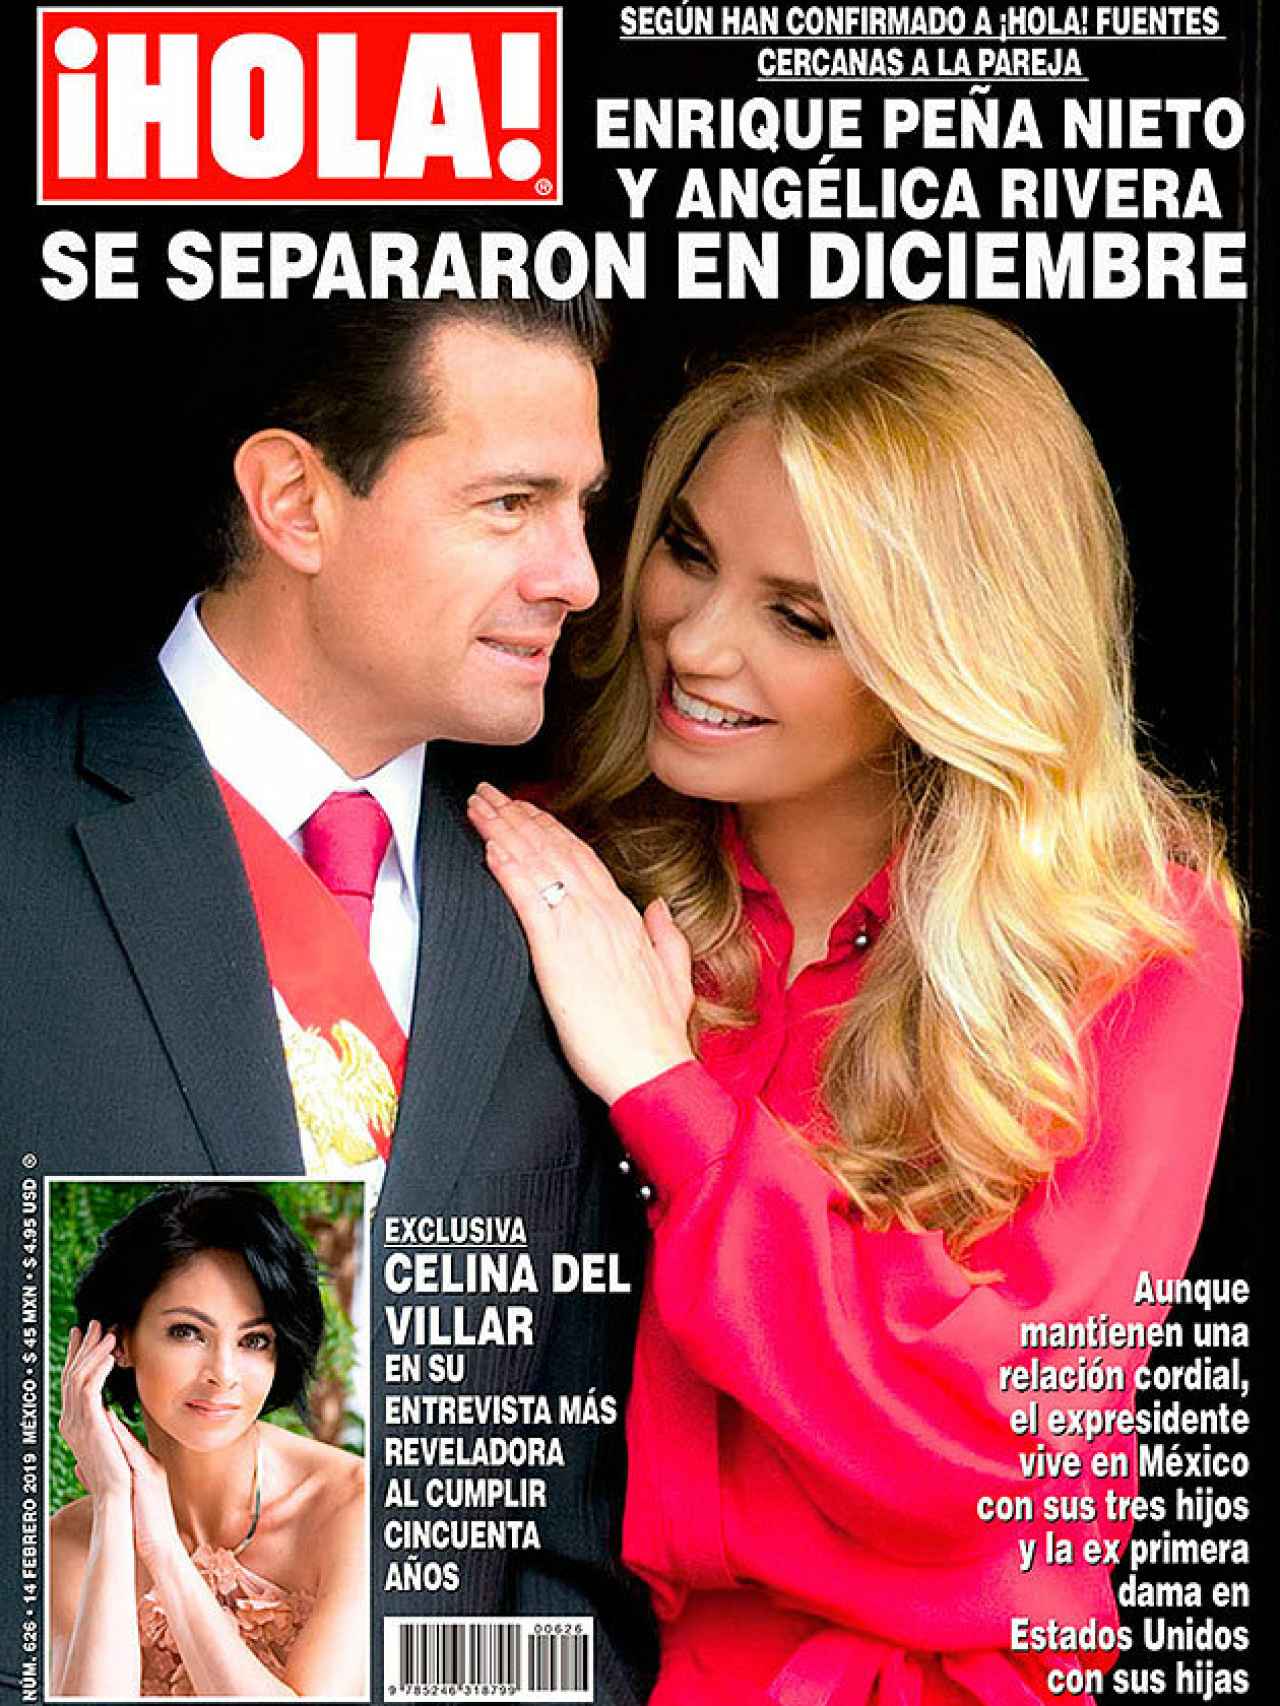 Enrique Peña Nieto y la actriz Angélica Rivera ponen fin a su matrimonio